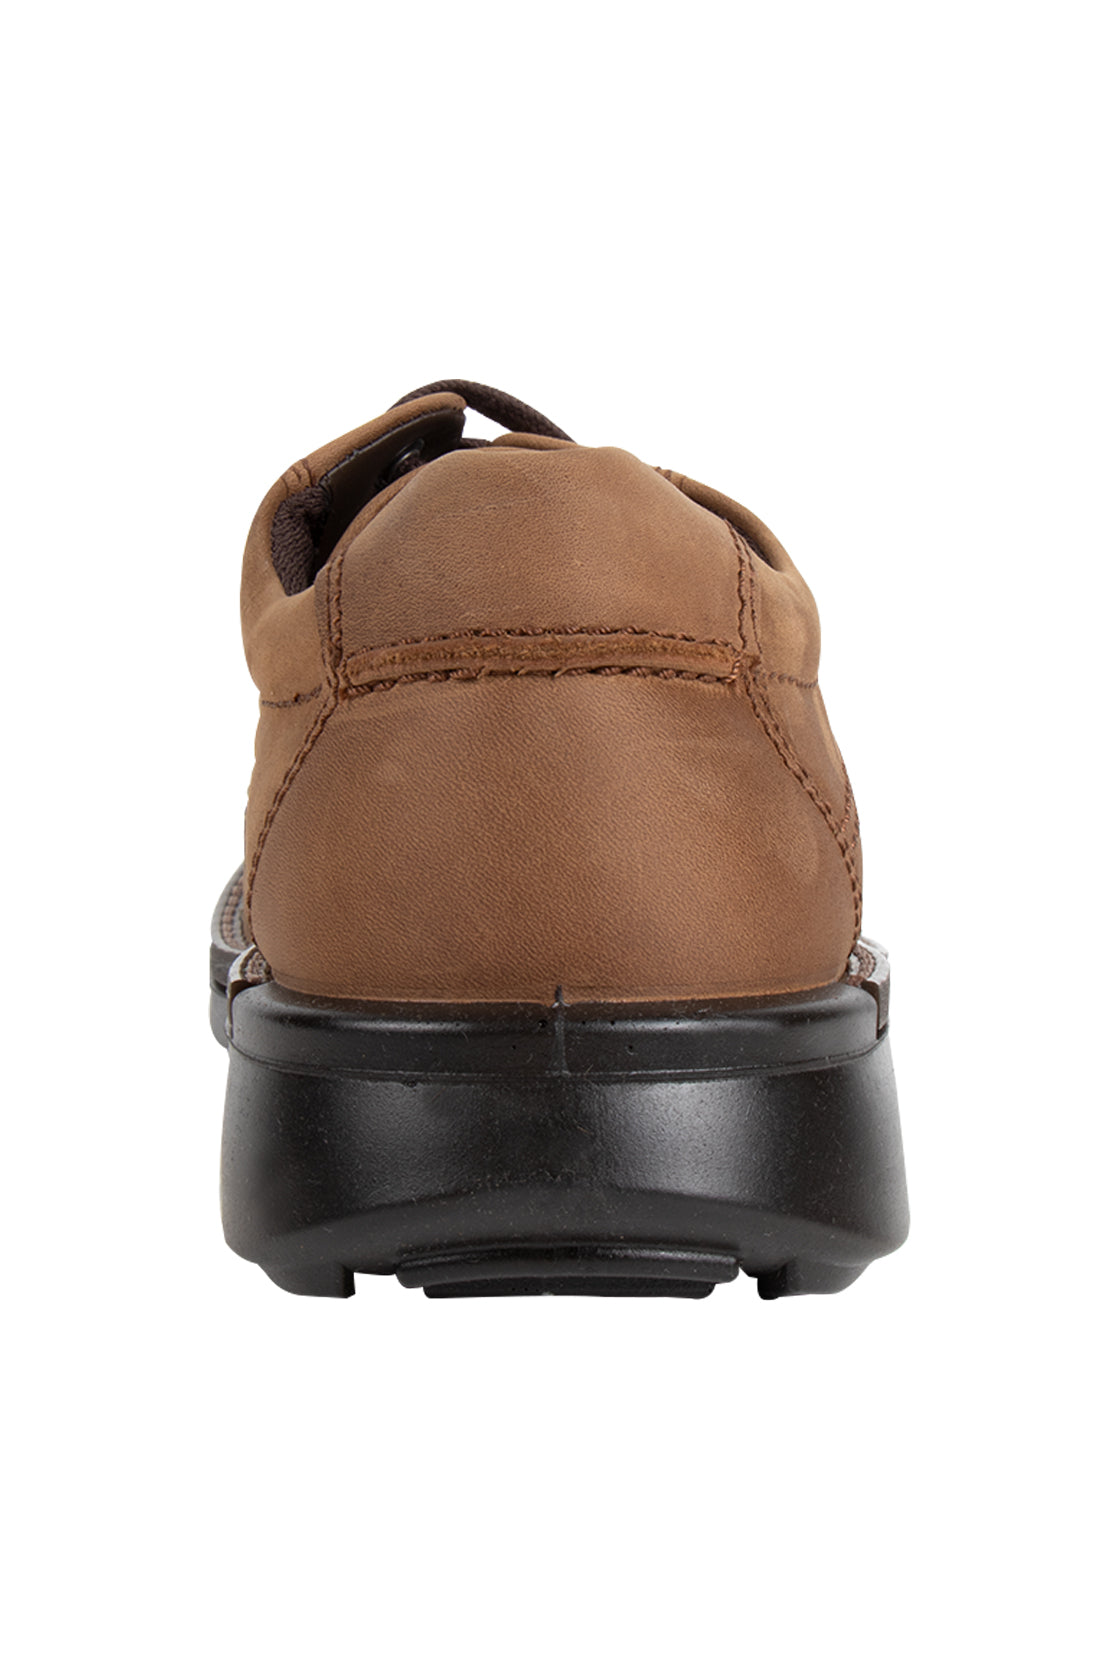 Ecco Fusion Shoe Cocoa Brown – routleys.com.au